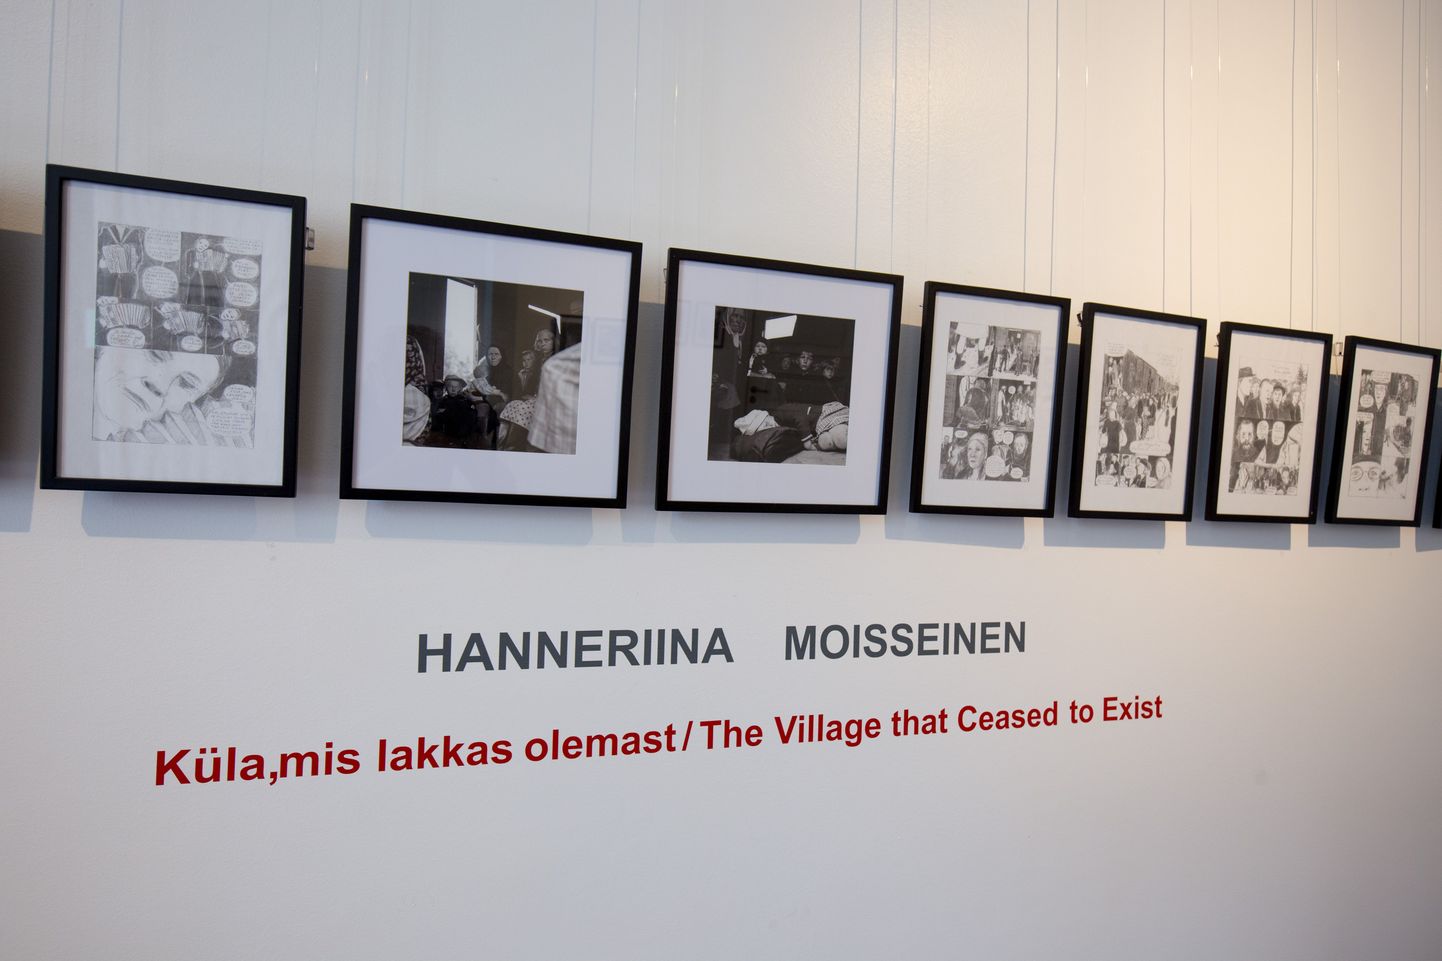 VILJANDI, EESTI, 11AUG15
Kondase keskus. Näitus. Teosed tegi Hannerina Moisseinen.

ELMO RIIG/SAKALA